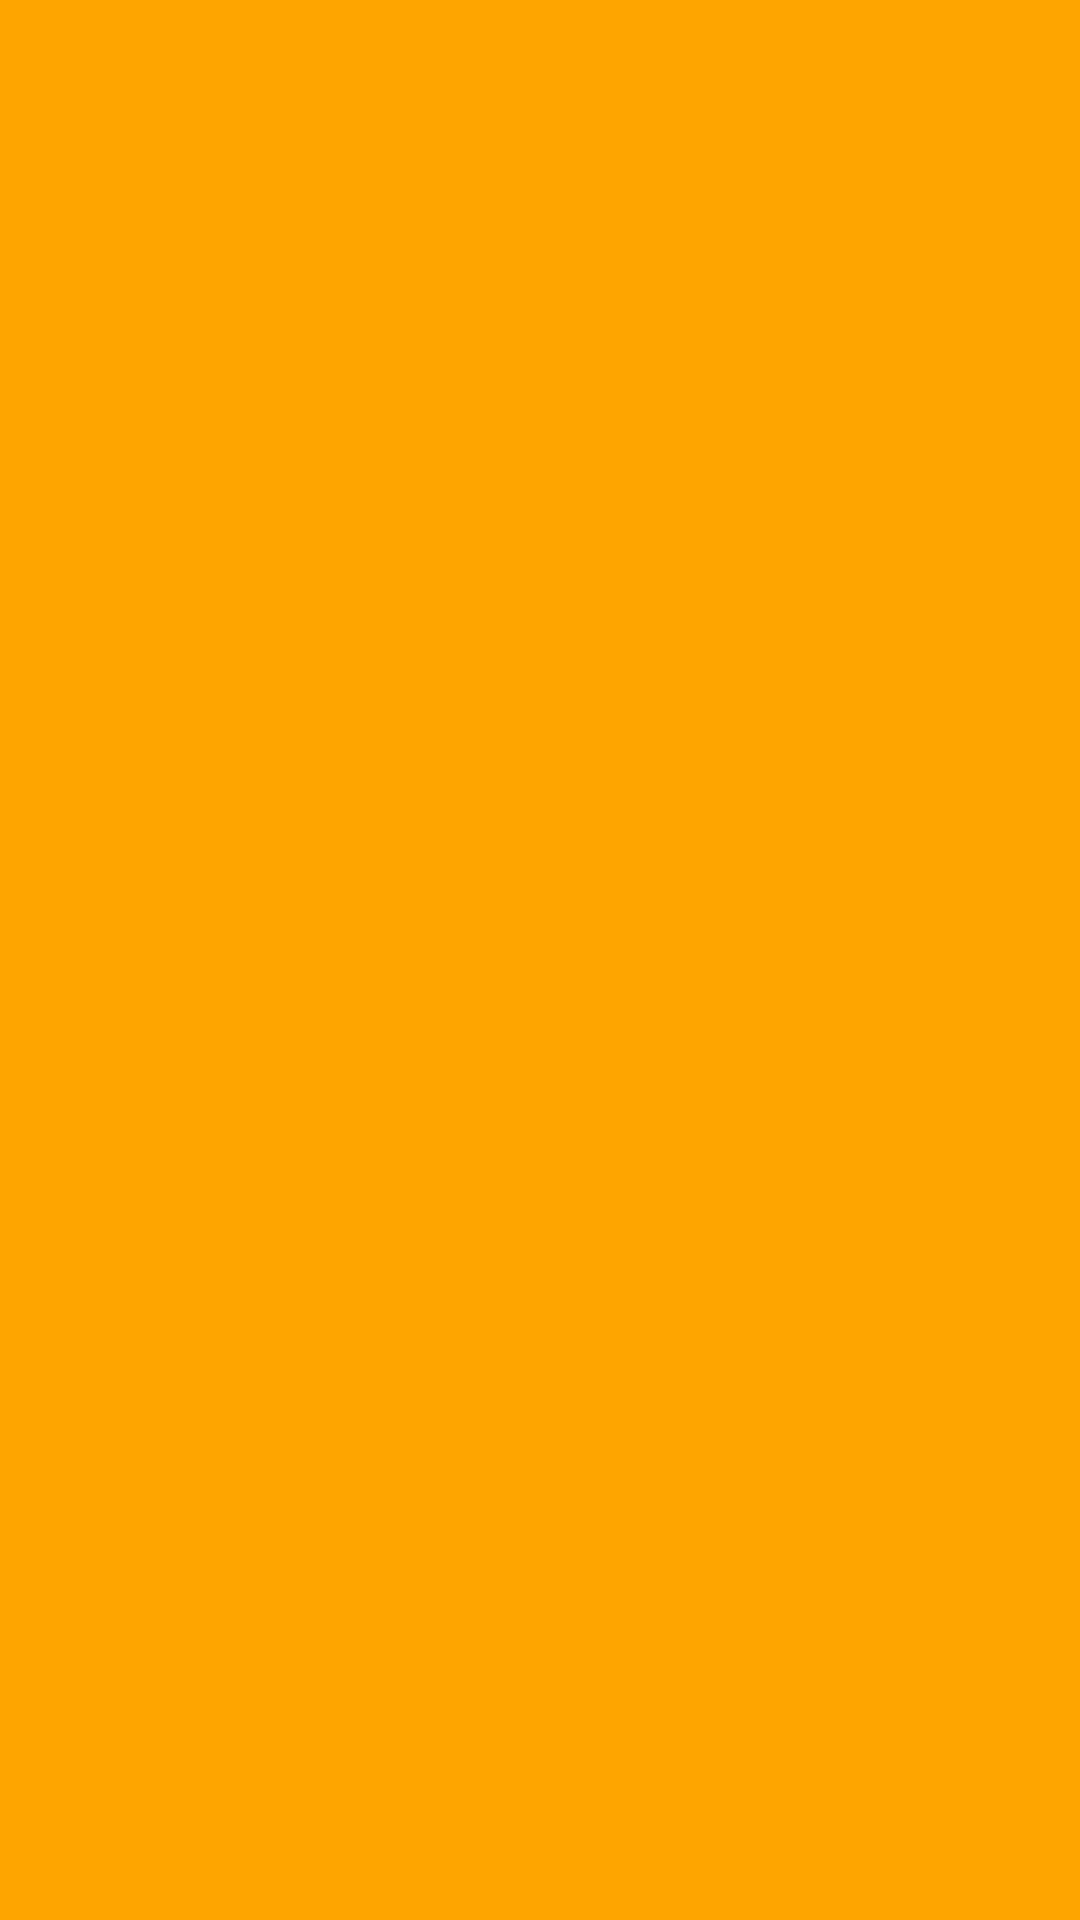 1080x1920 Orange Web Solid Color Background